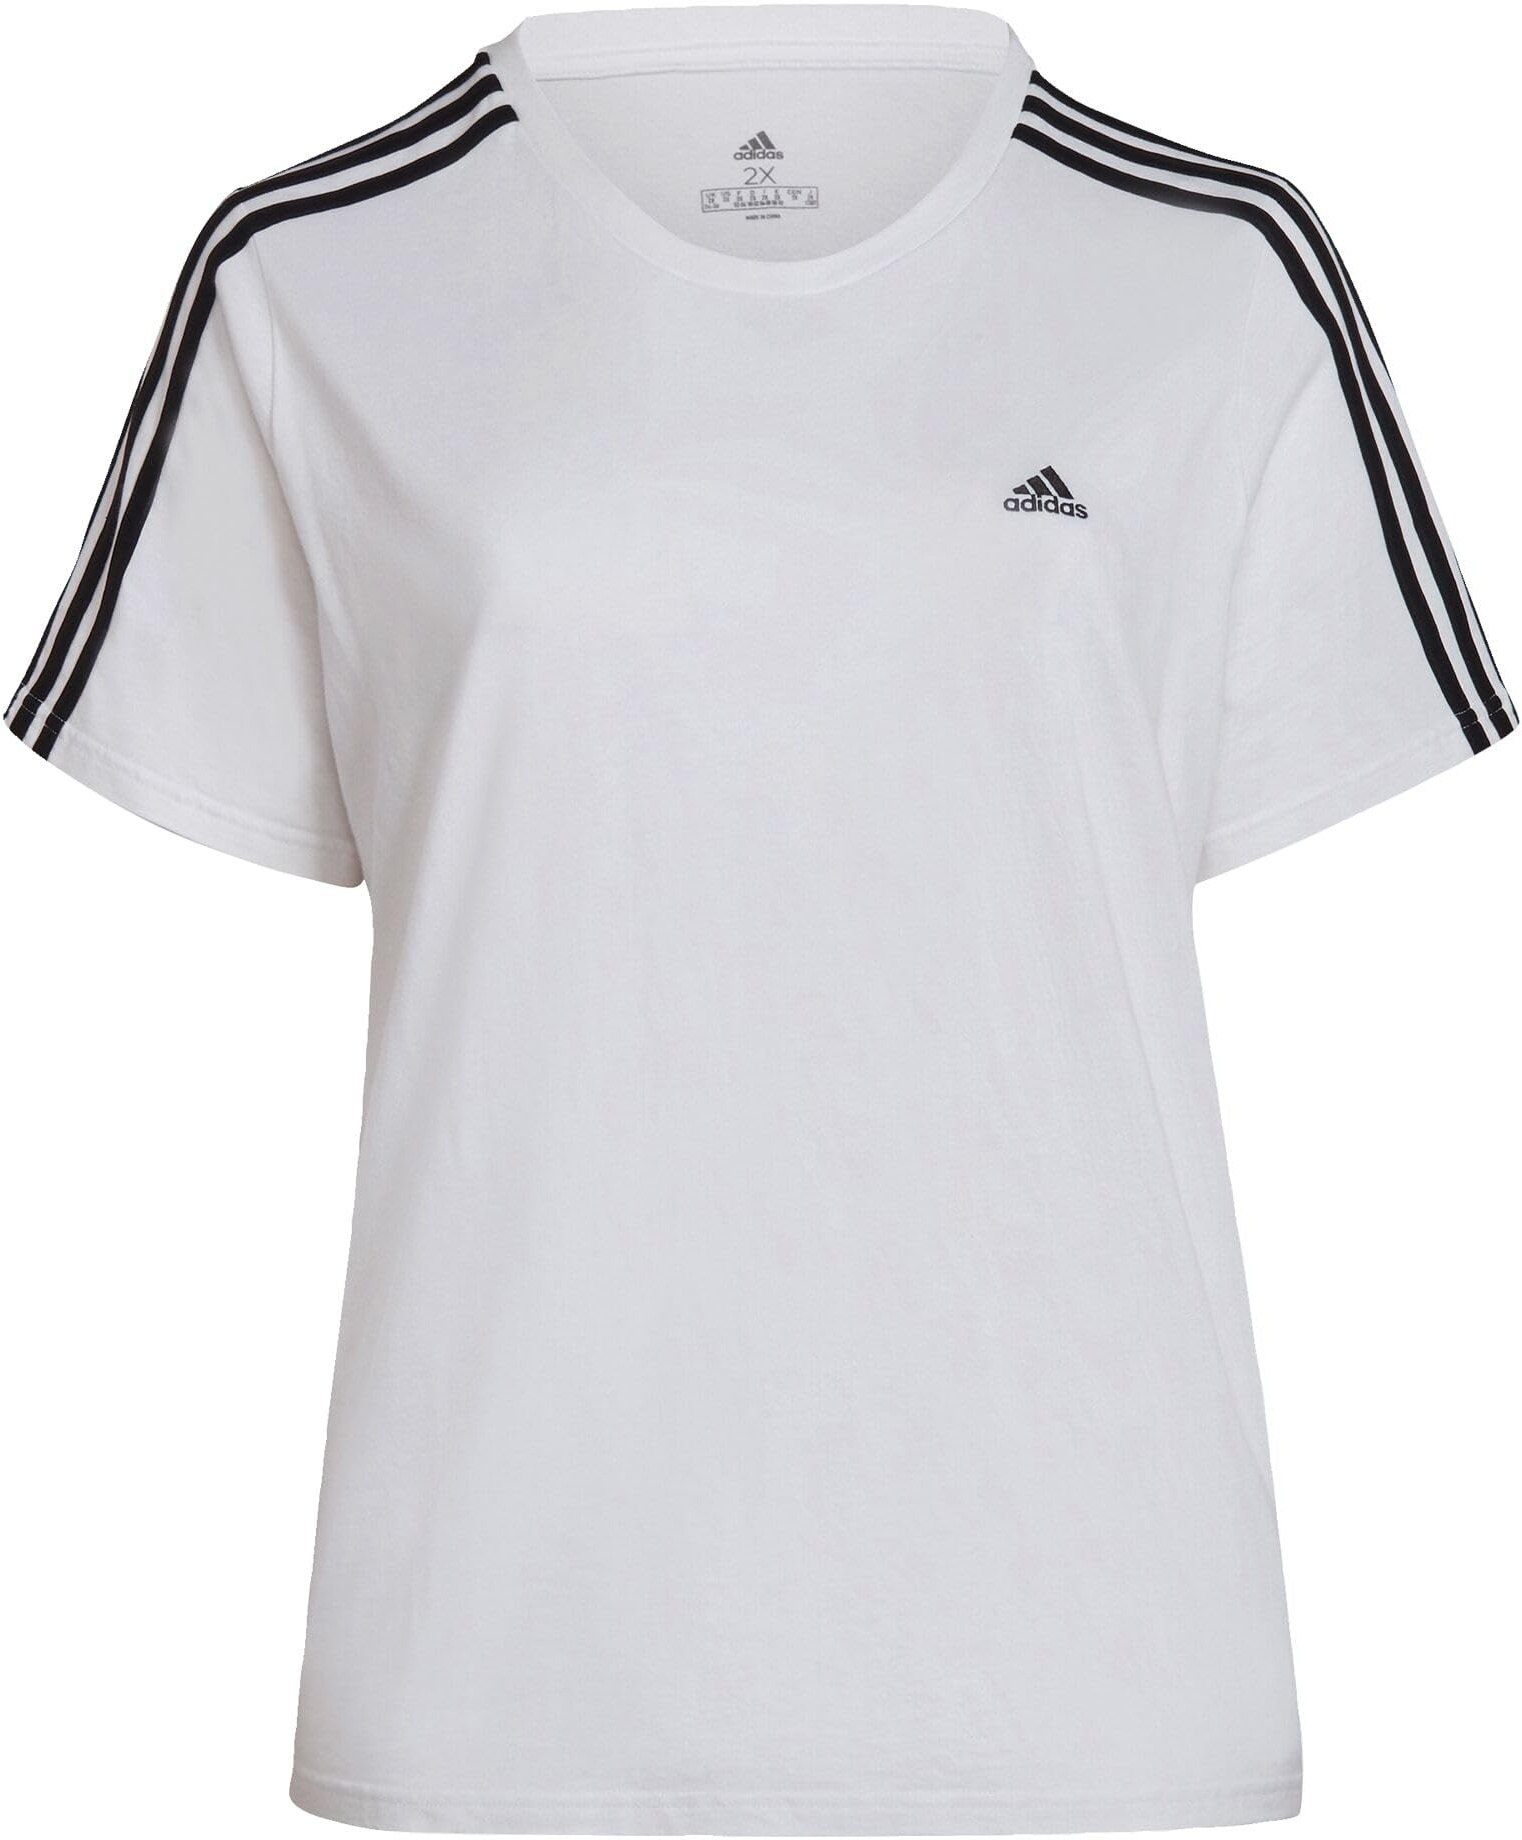 Adidas, Loungewear Essentials Slim 3-Stripes, T-Shirt, Weiß Schwarz, 4X, Frau